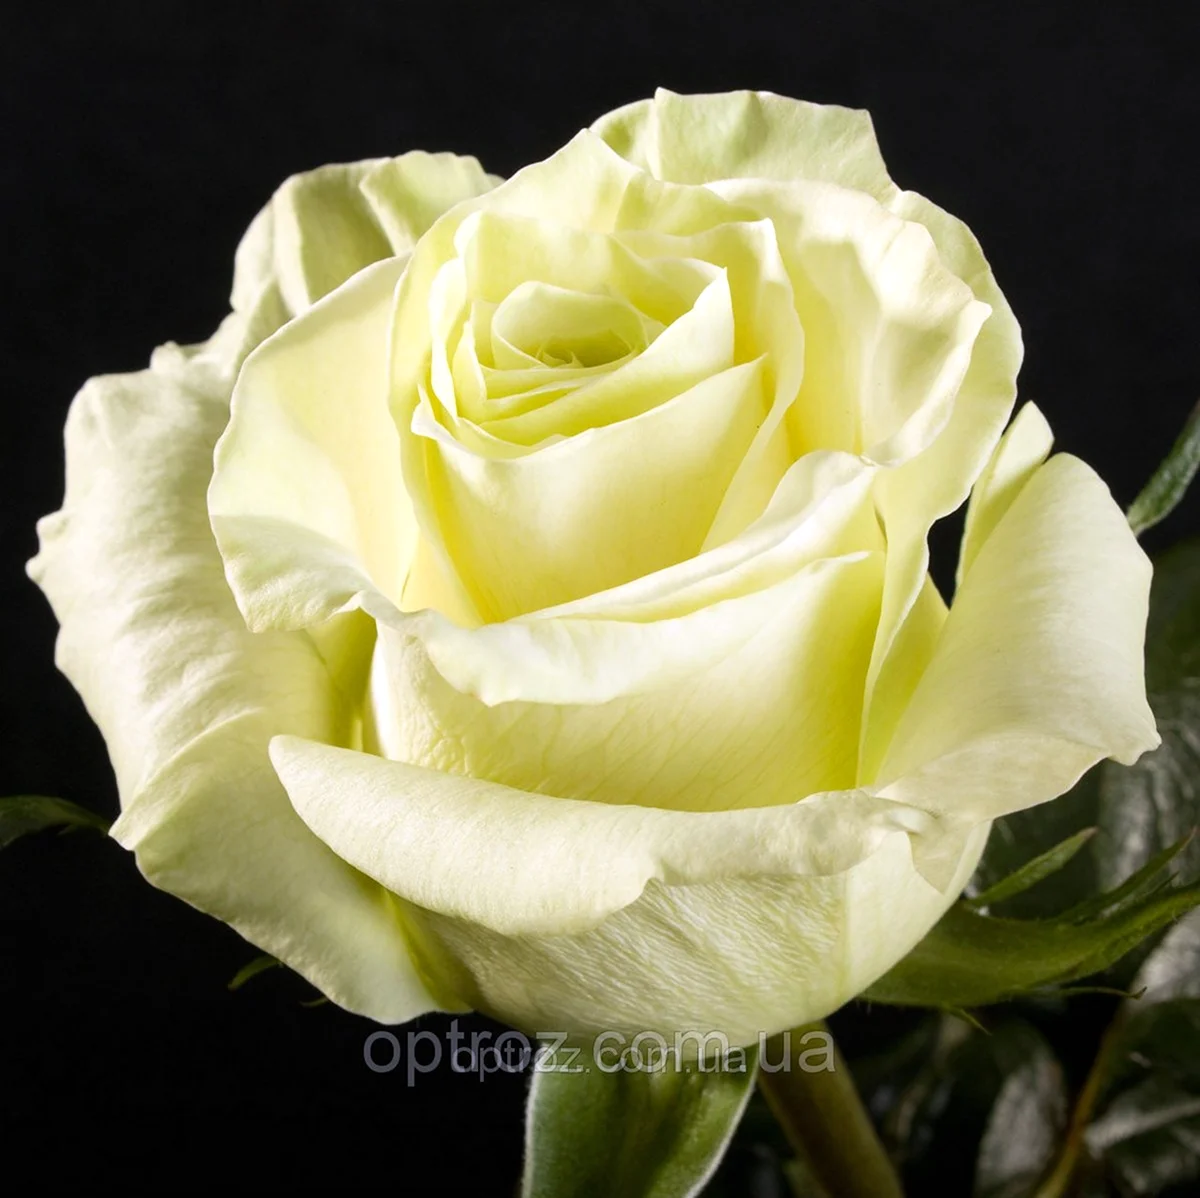 Мондиаль роза белая Эквадор